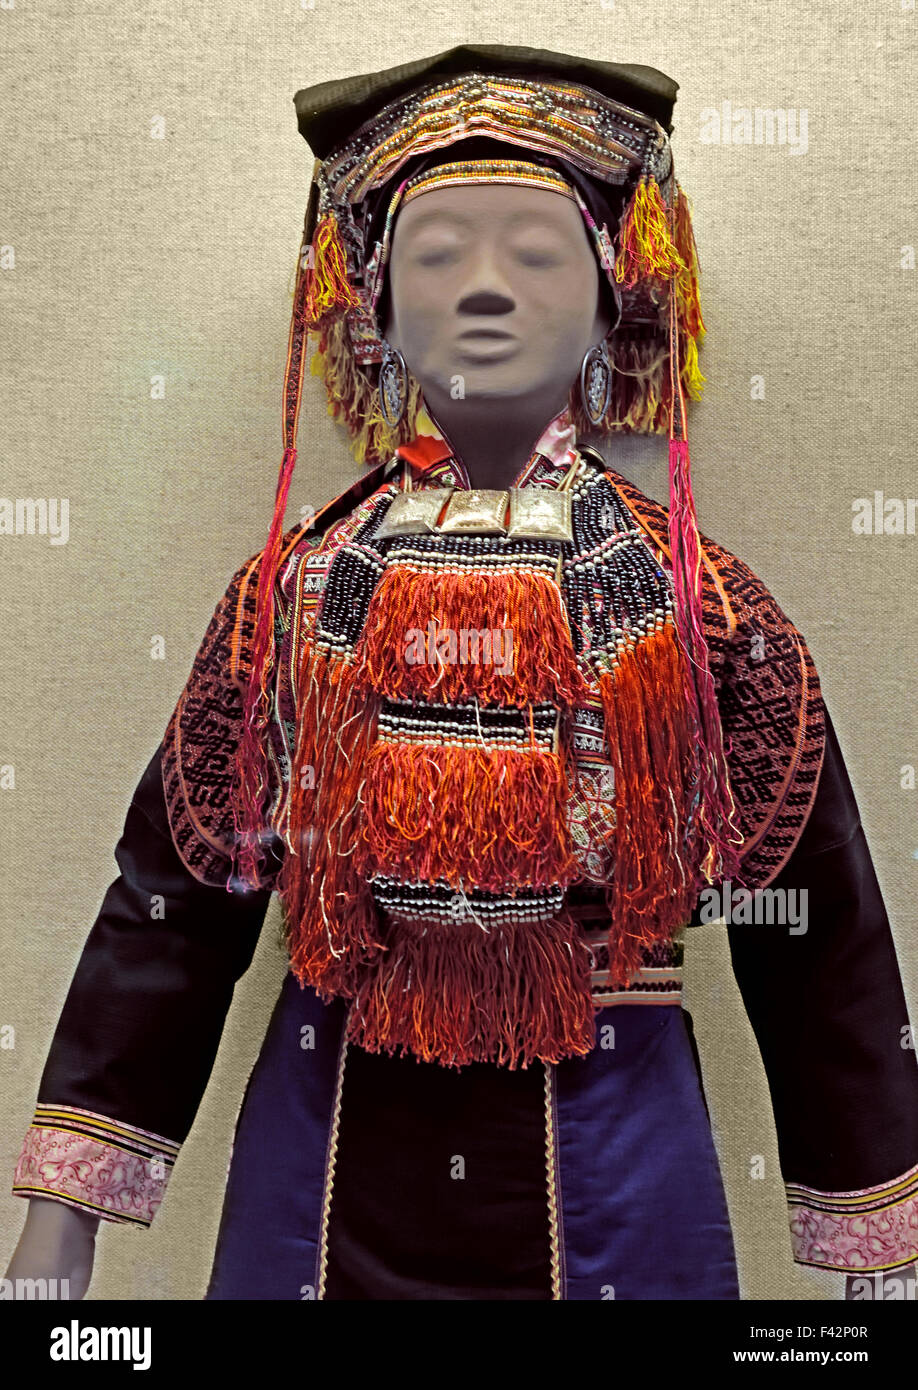 Robe de femme avec stich-motif brodé et ornements d'argent nationalité Yao Jinxiu, région autonome Zhuang du Guangxi fin du 20e siècle Musée de Shanghai de l'ancien art chinois Chine Banque D'Images